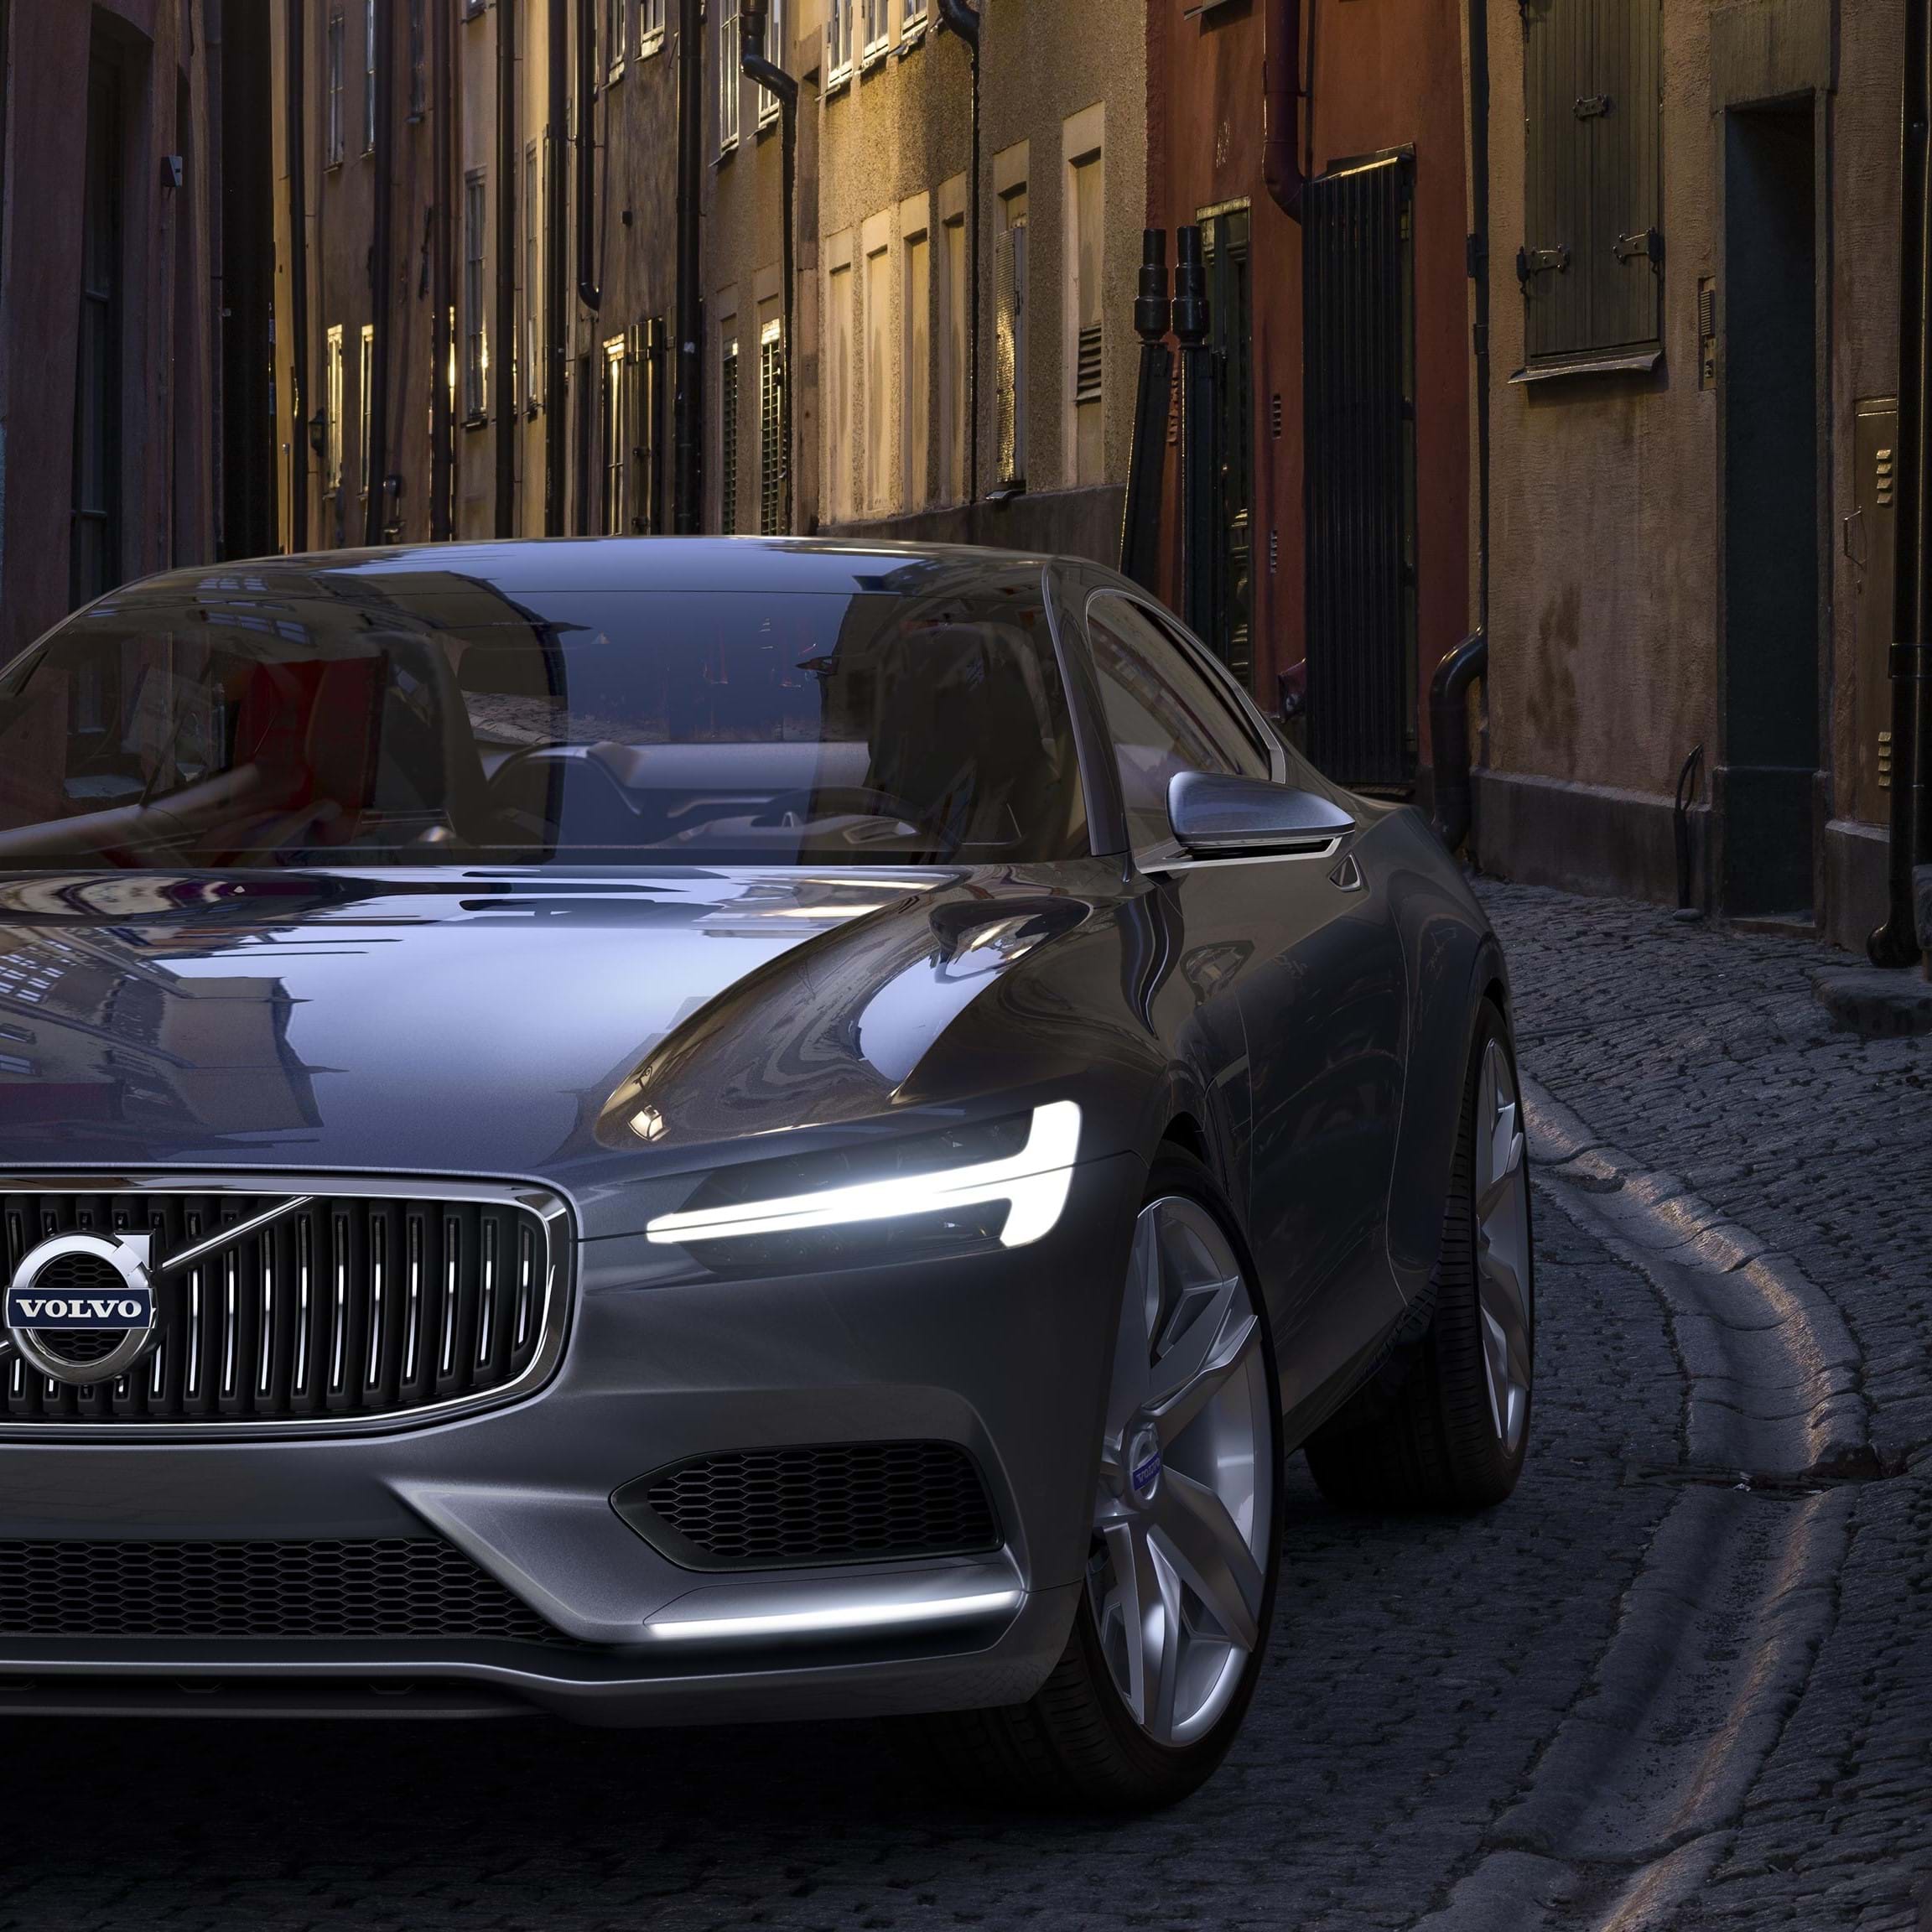 Volvo Concept Coupe gri deplasându-se pe o stradă pavată cu piatră cubică din oraș